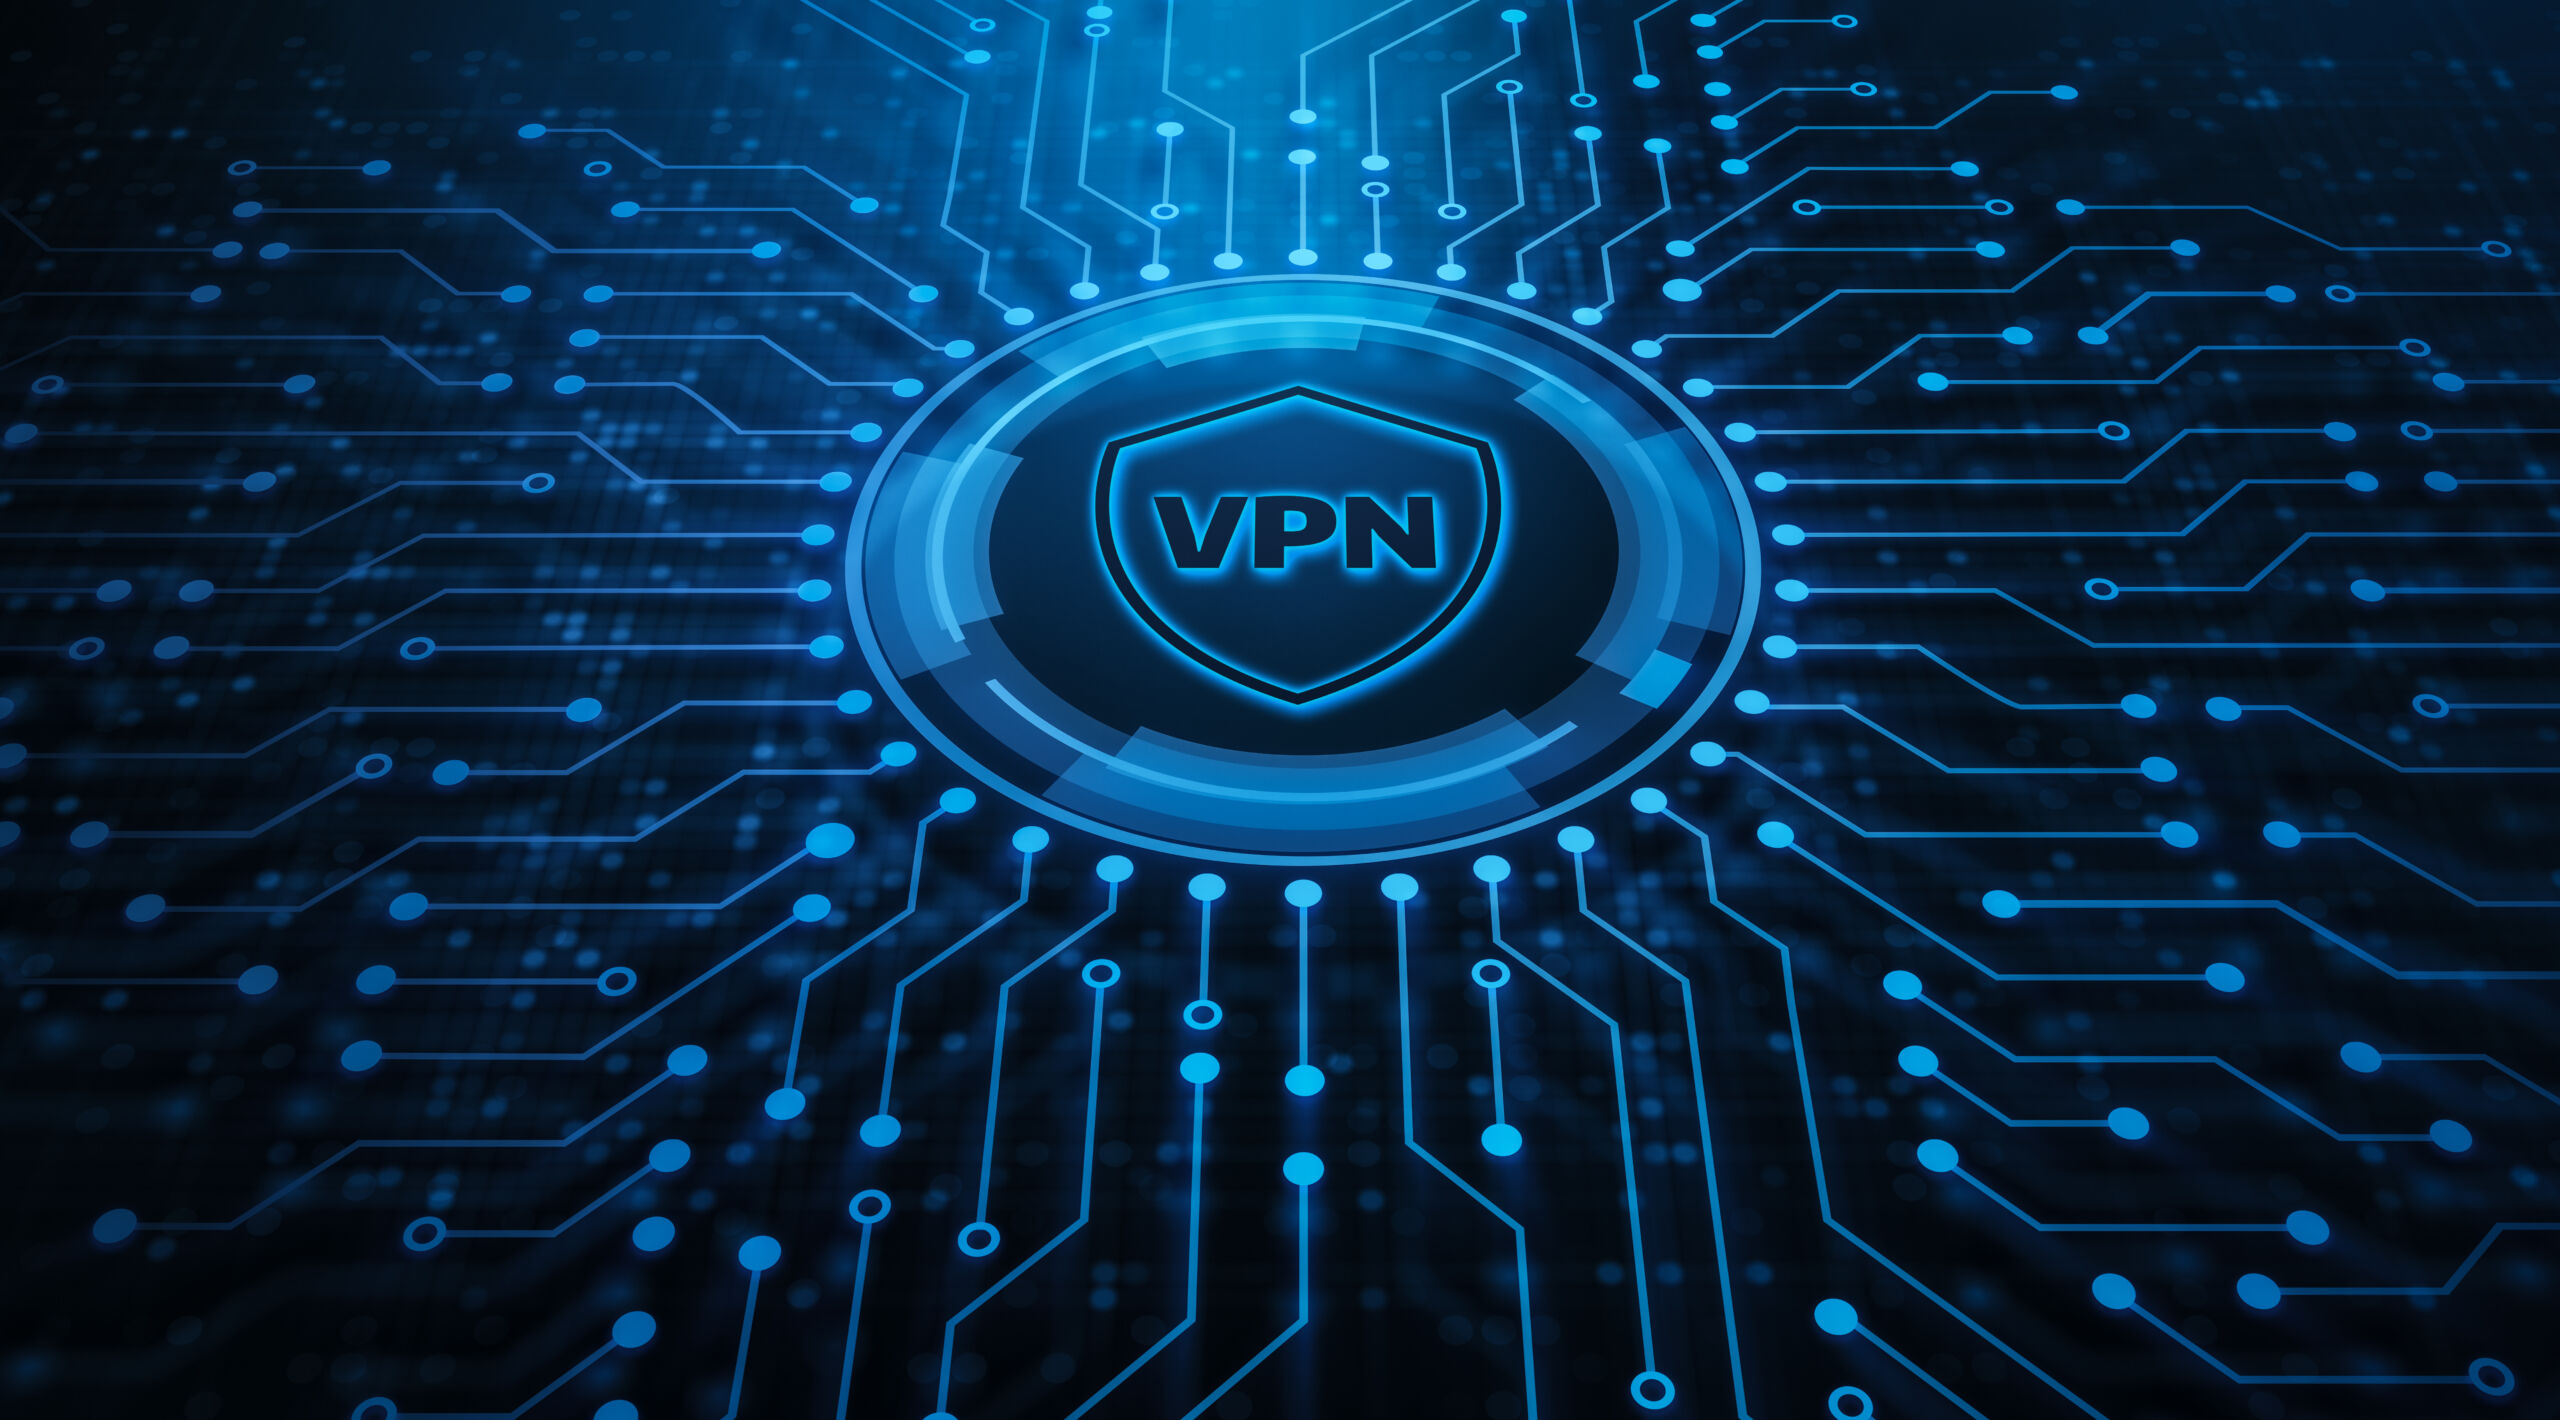 VPN jest formą zabezpieczenia tożsamości w sieci